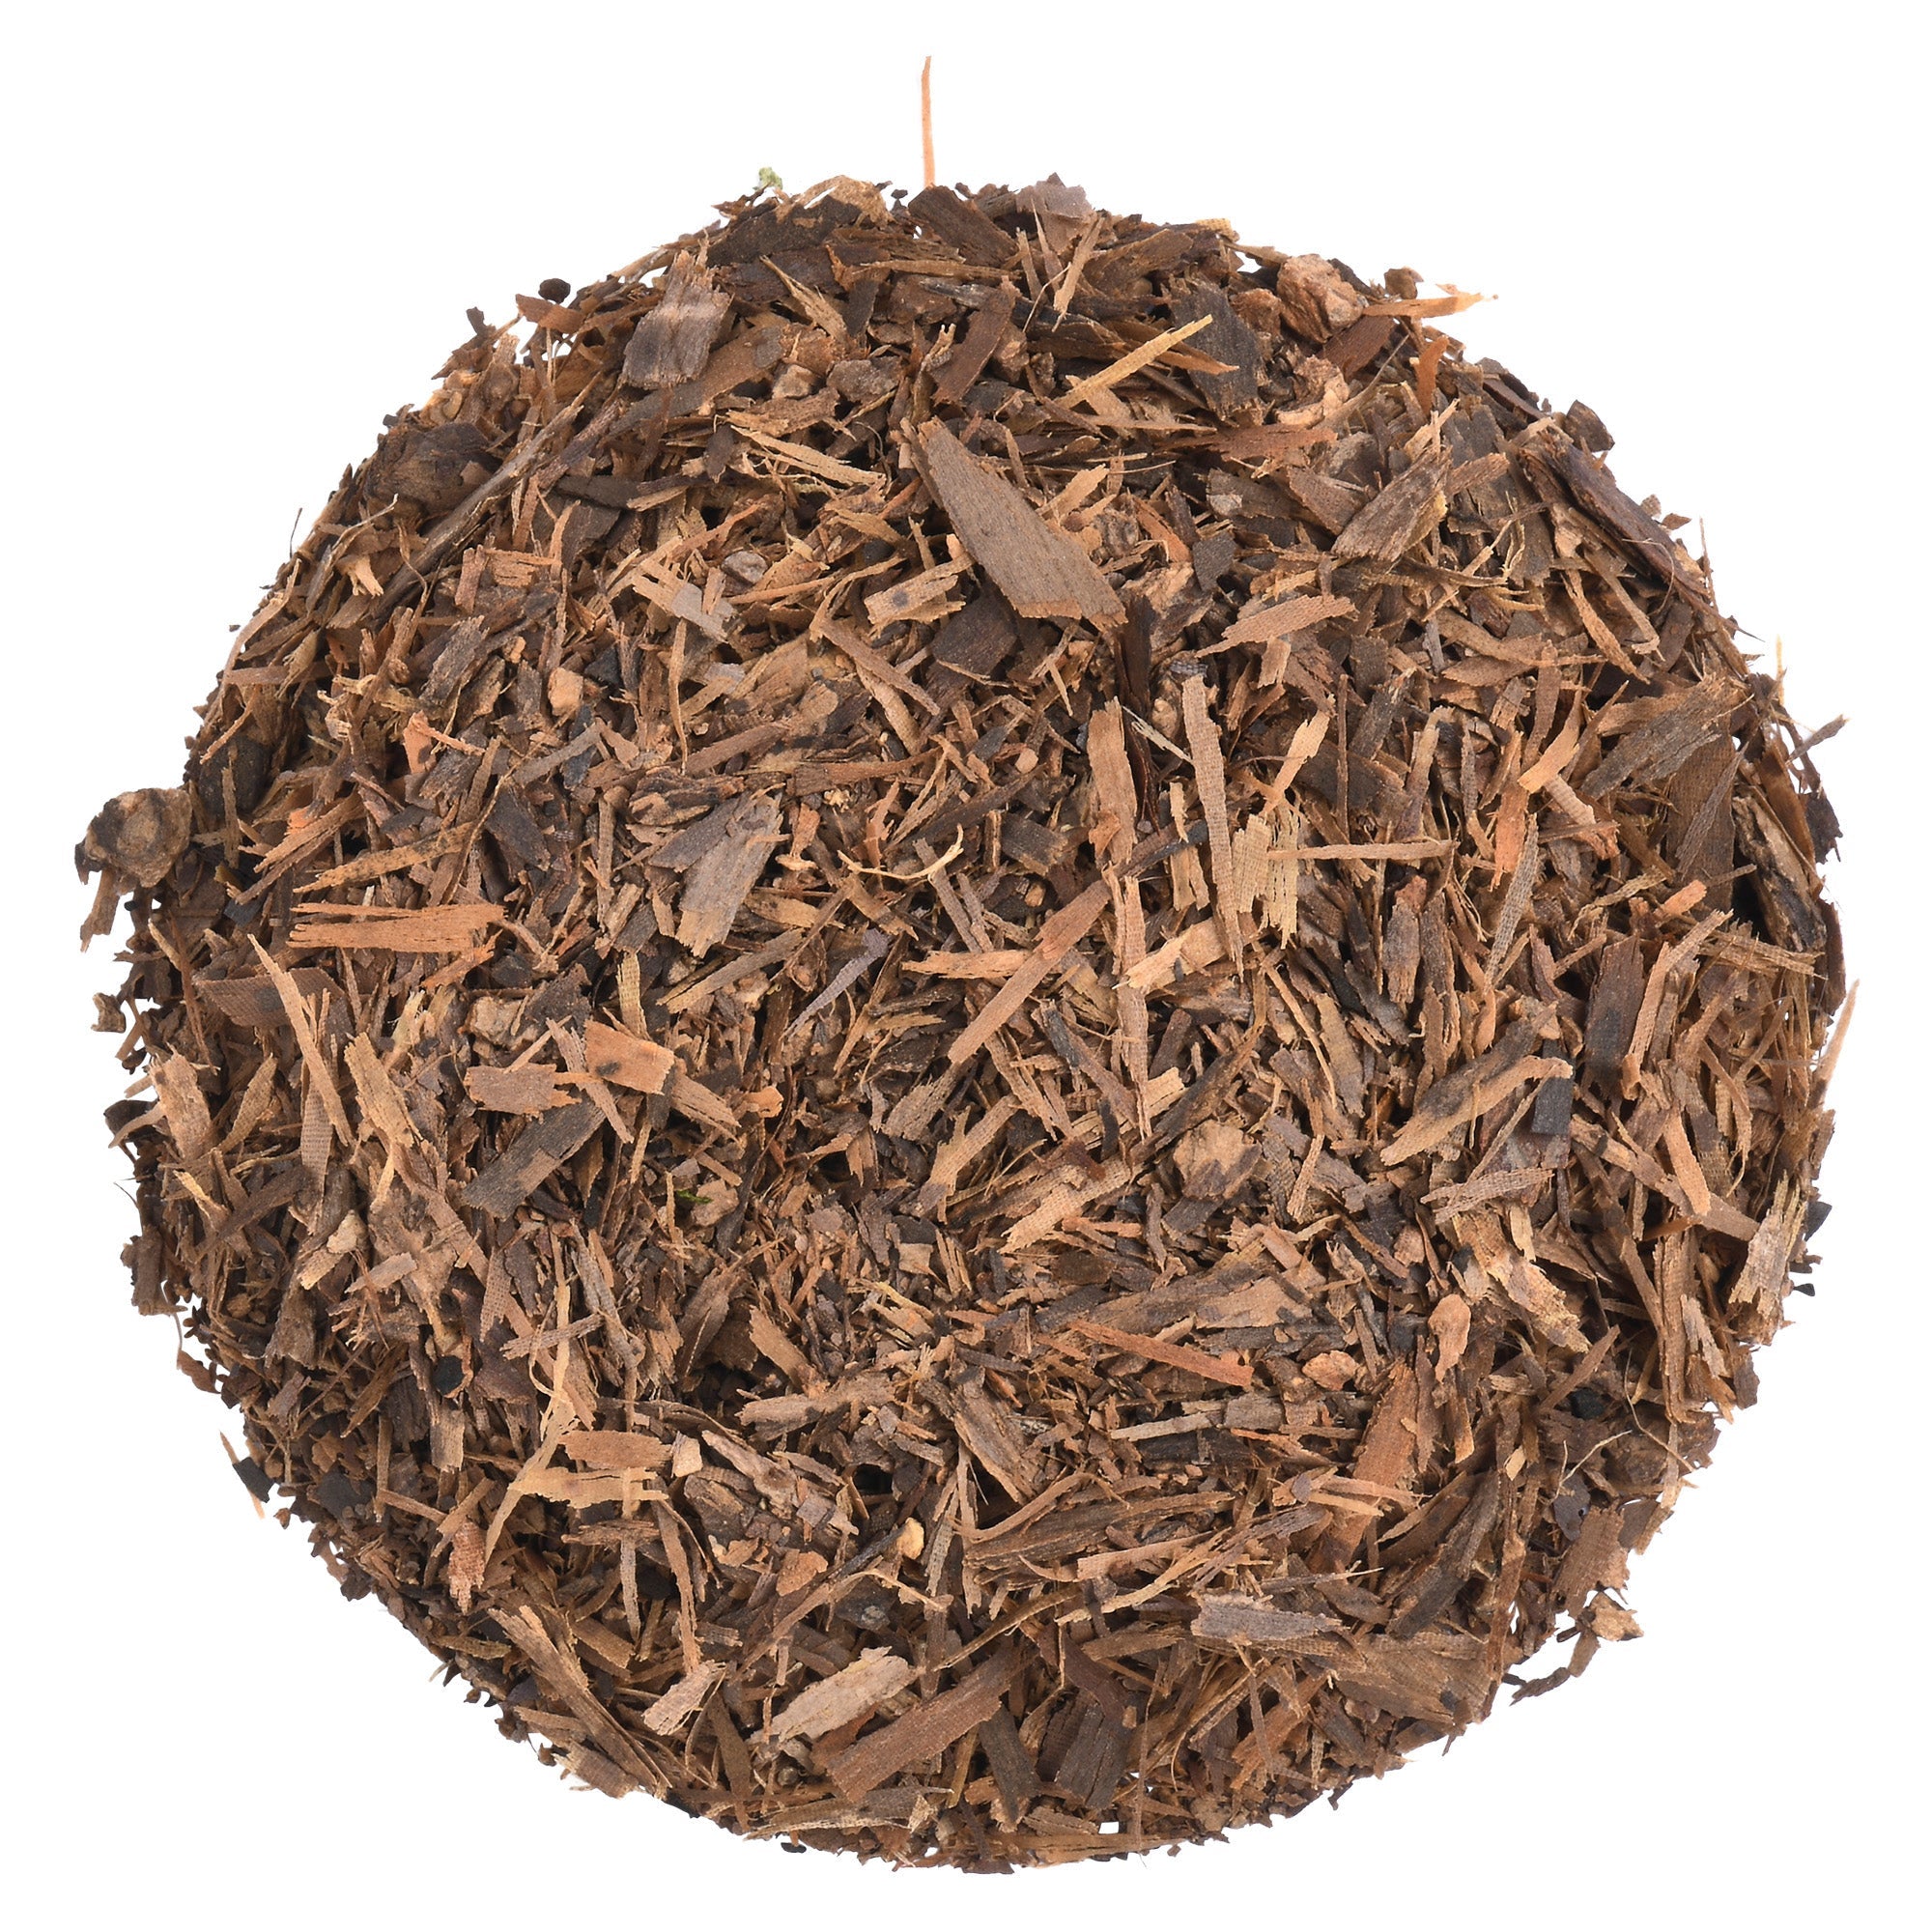 Herb - Lapacho Bark (Pau D’Arco) Dried Herbs 100g 3.55oz